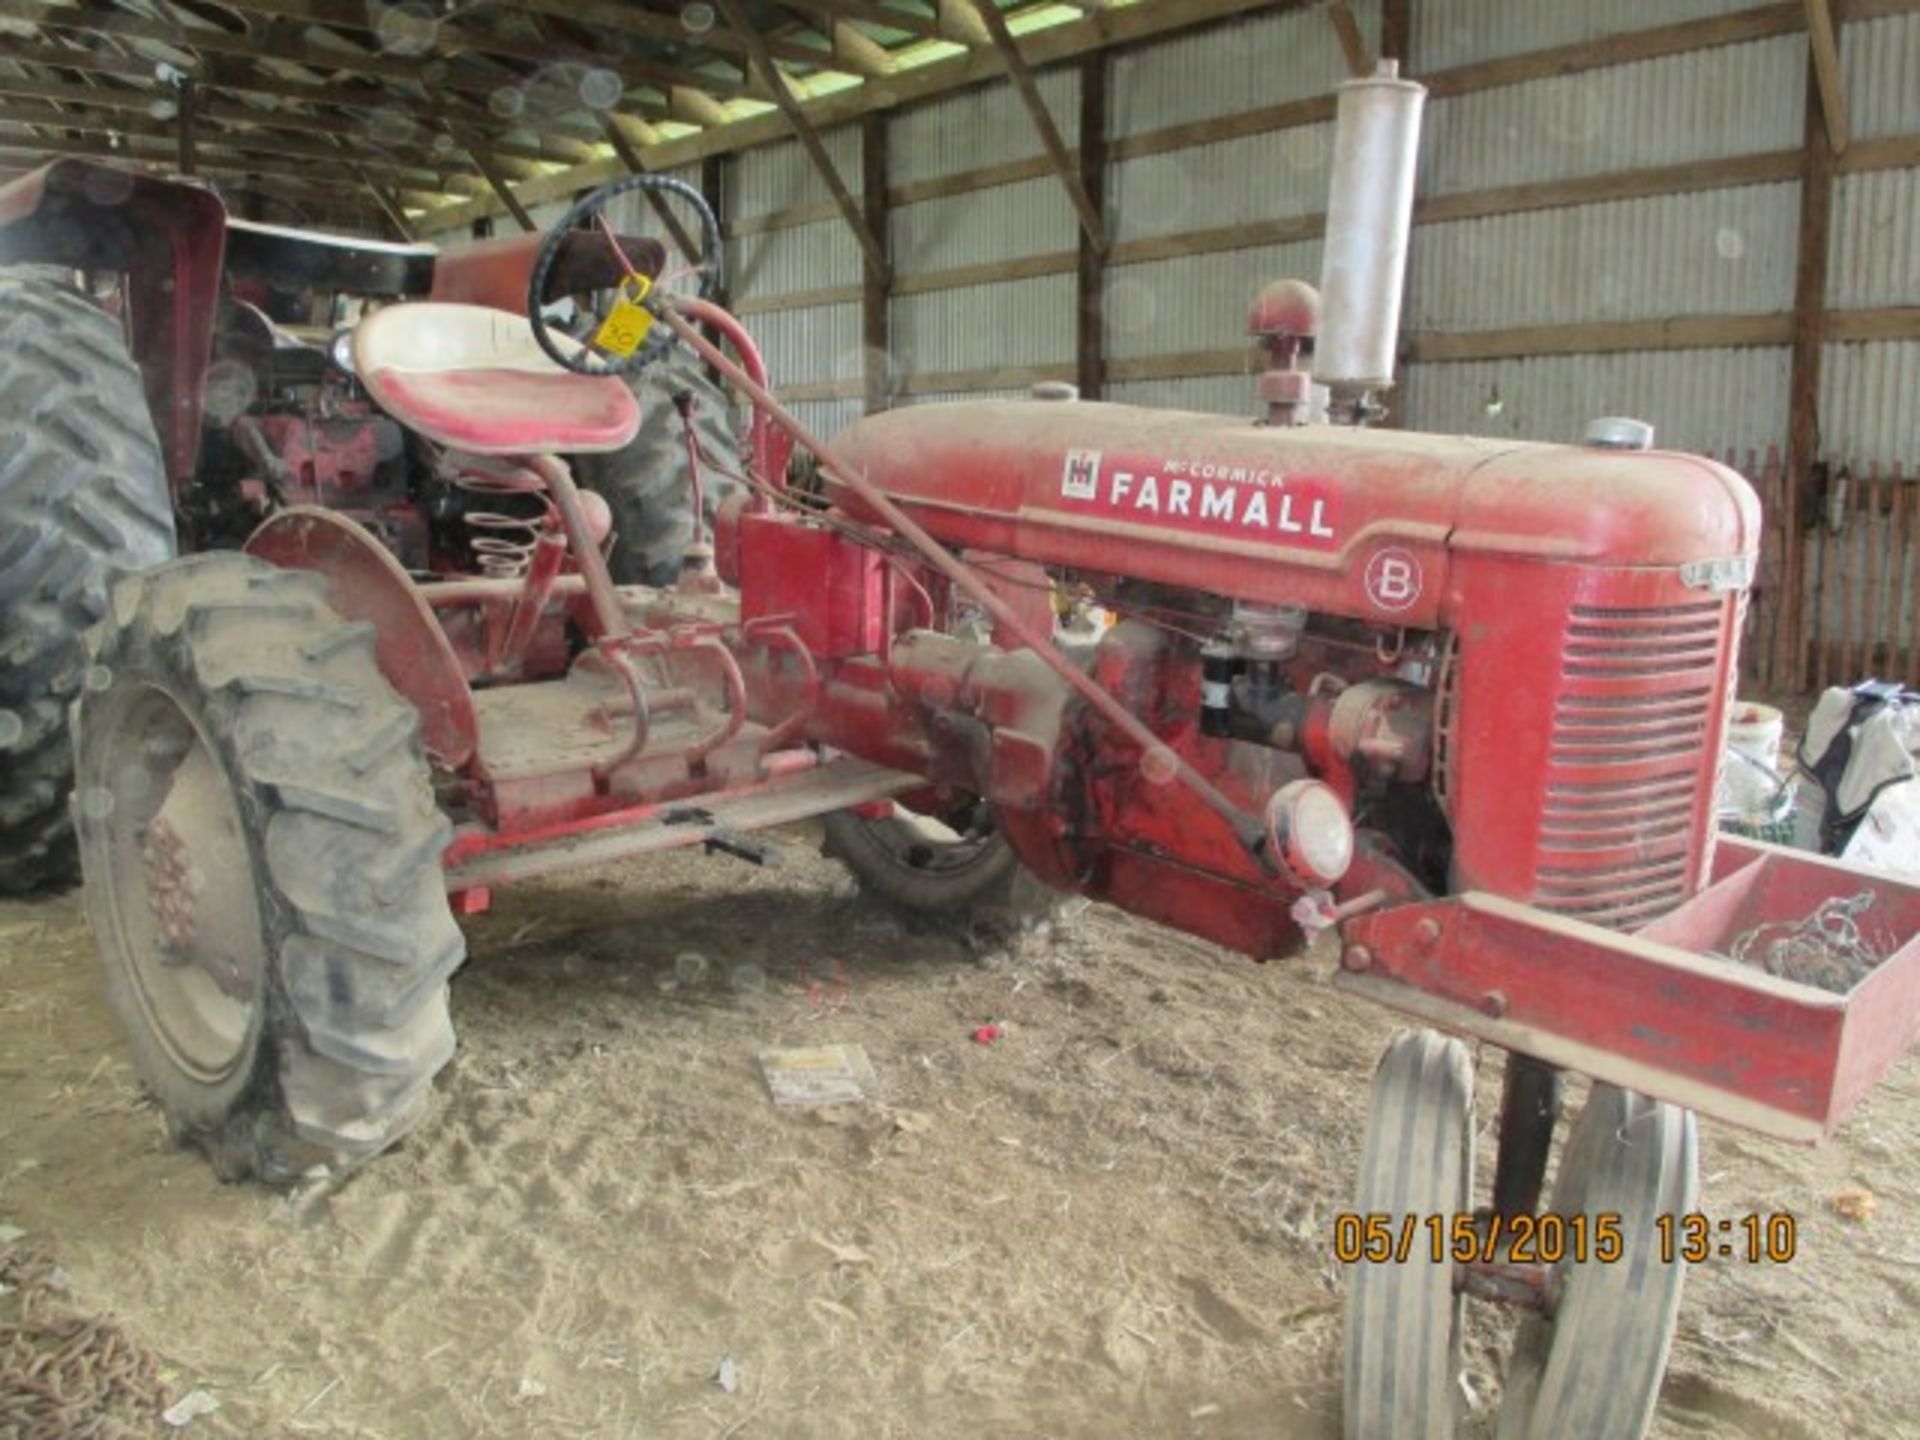 Farmall B, Culti-Vision, nf tractor